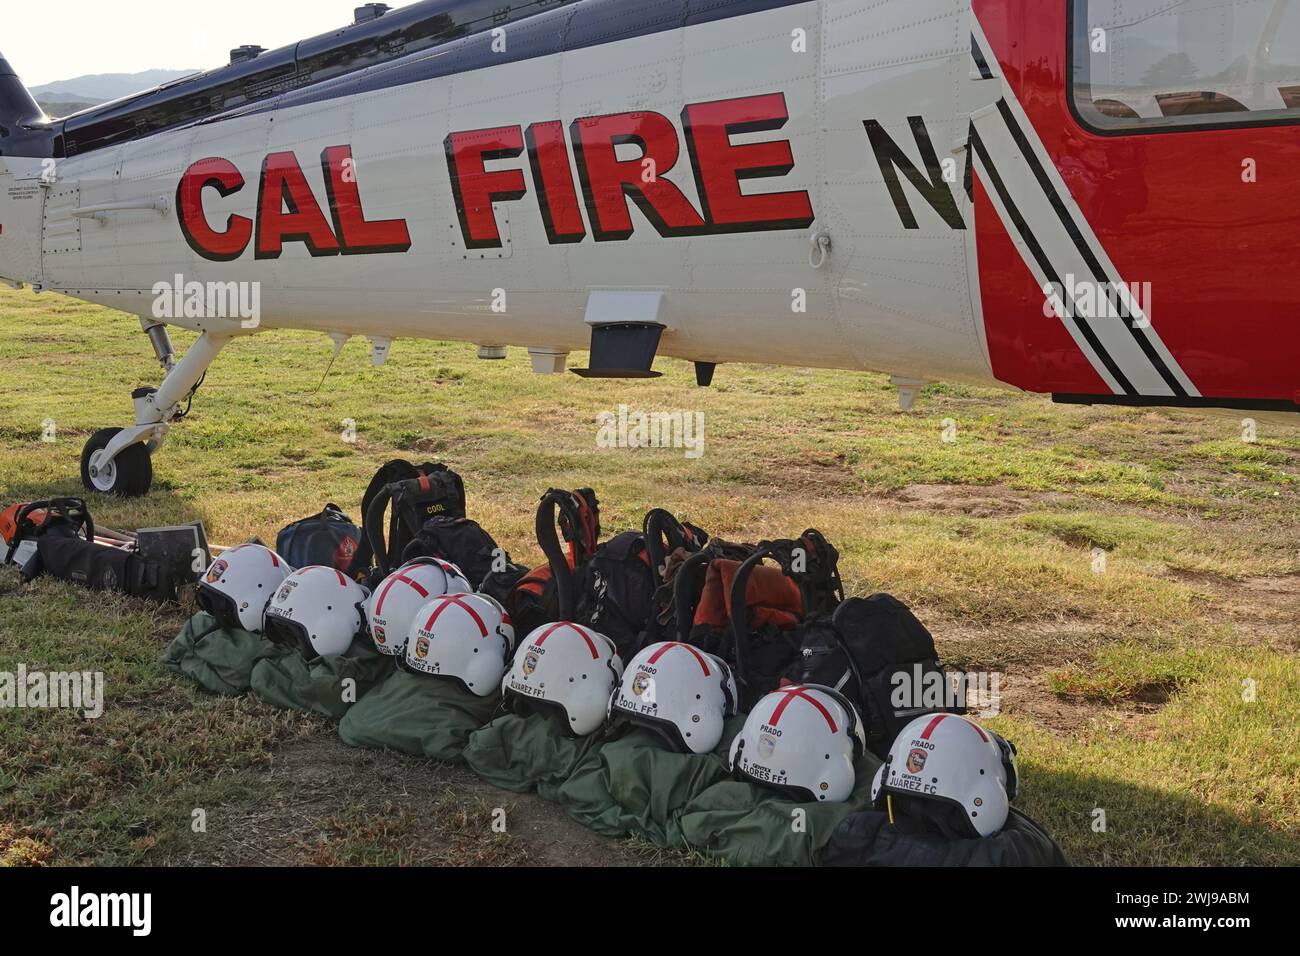 Los Angeles, Kalifornien, USA - 4. November 2023: Ein Hubschrauber von Cal Fire Sikorsky S-70i wird mit Feuerwehrausrüstung und Helmen der Flugbesatzung gezeigt. Stockfoto